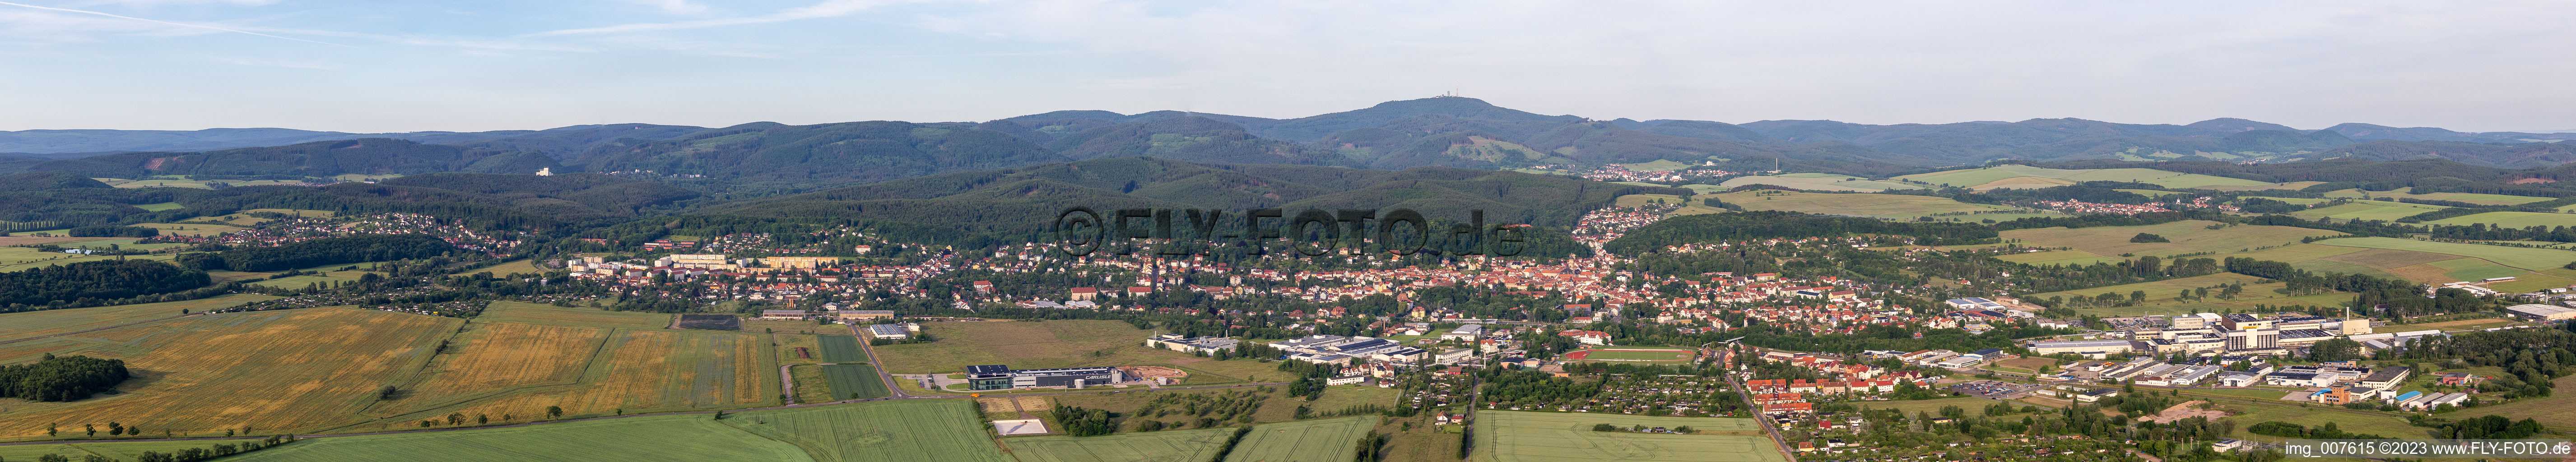 Vue aérienne de Panorama à Waltershausen dans le département Thuringe, Allemagne